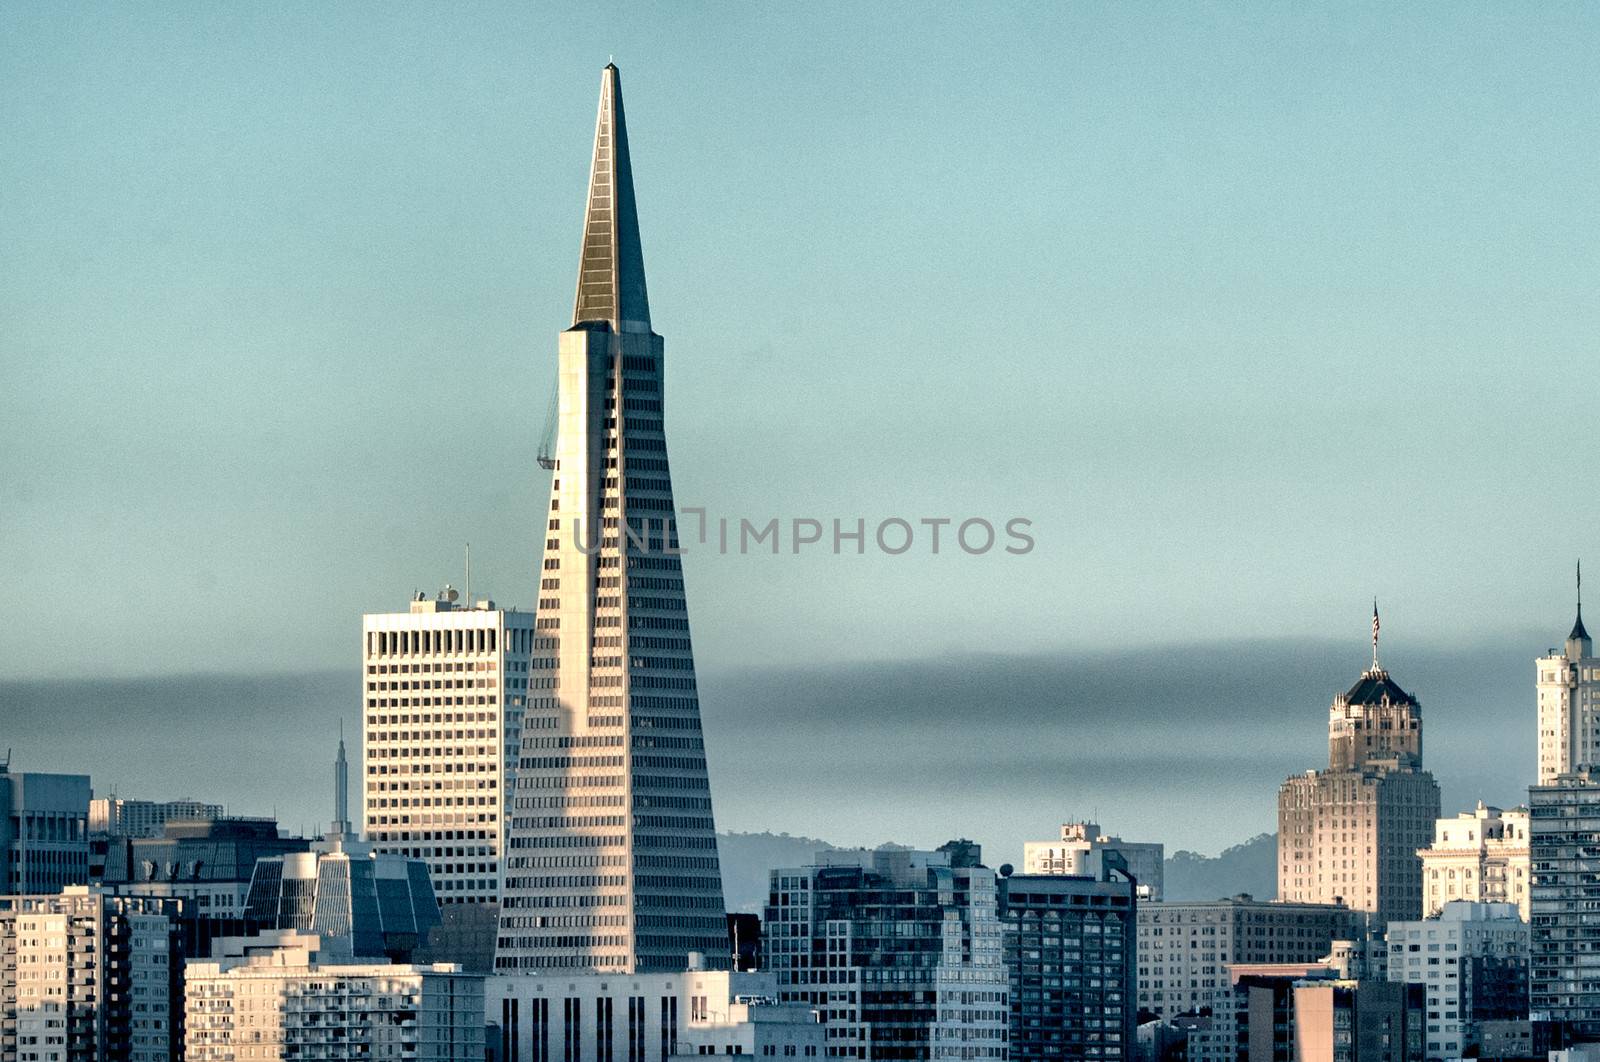 San Francisco skylines by CelsoDiniz